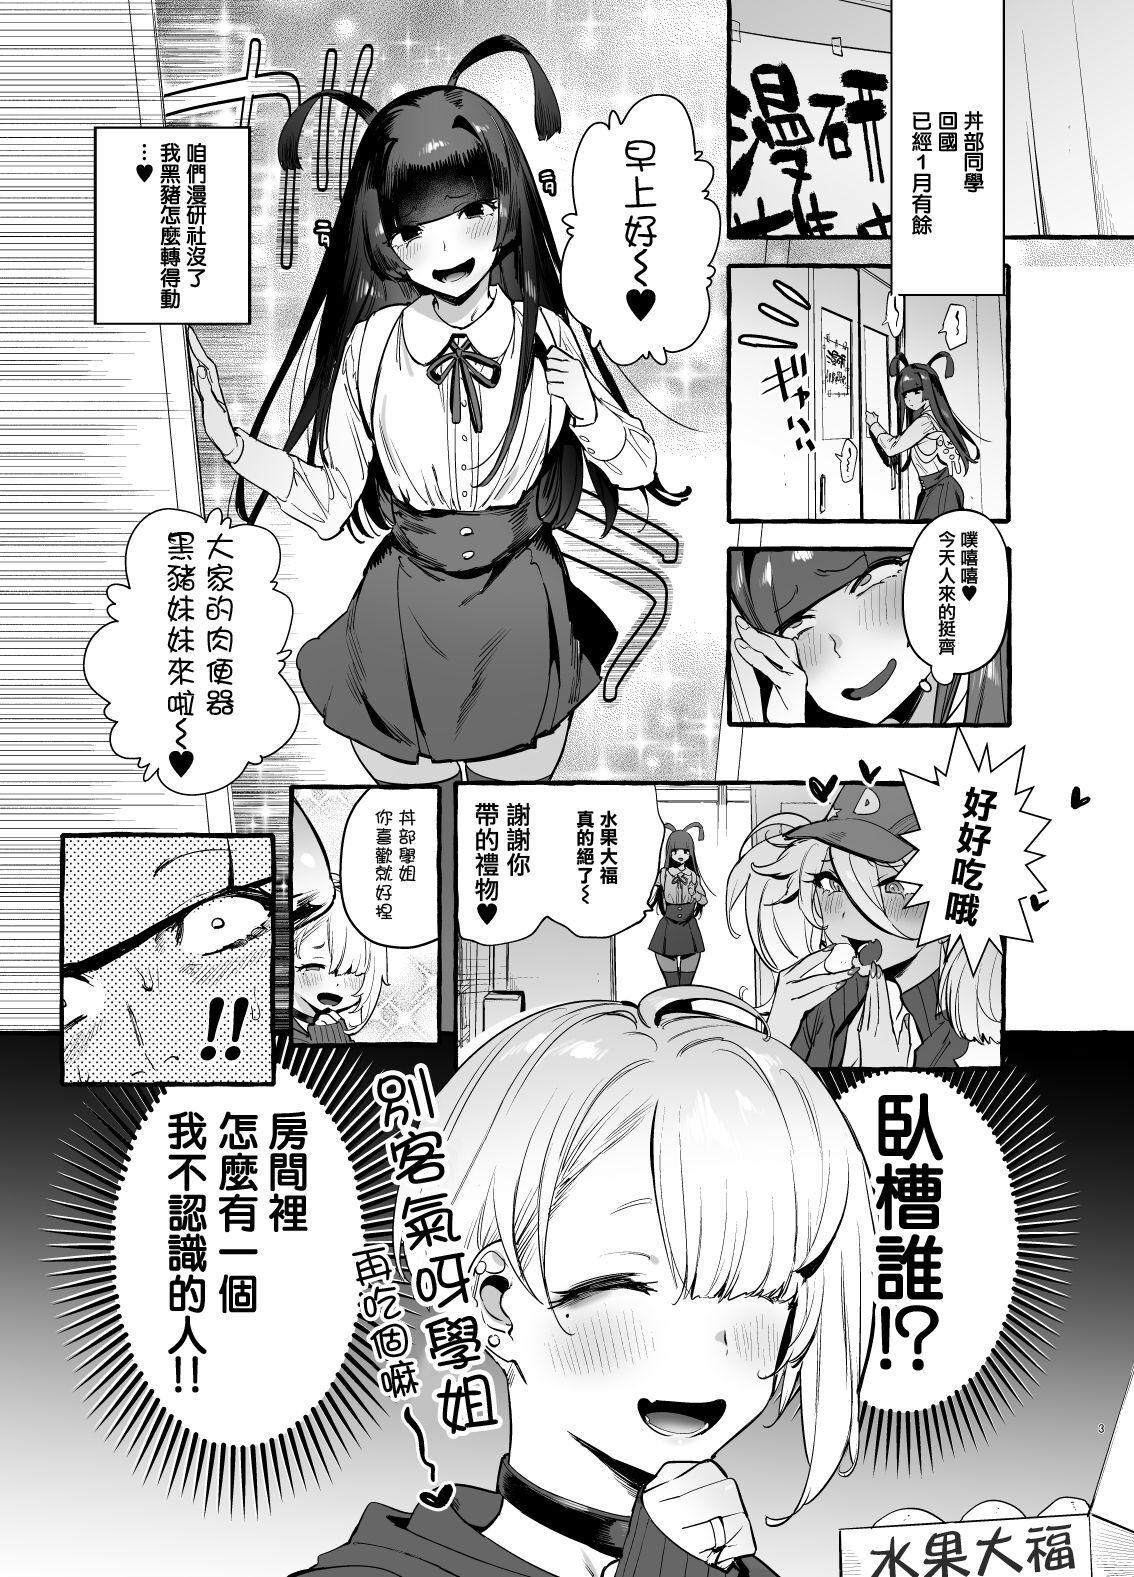 Grandma OtaCir no KuroGal VS Bokura Gay Cut - Page 5